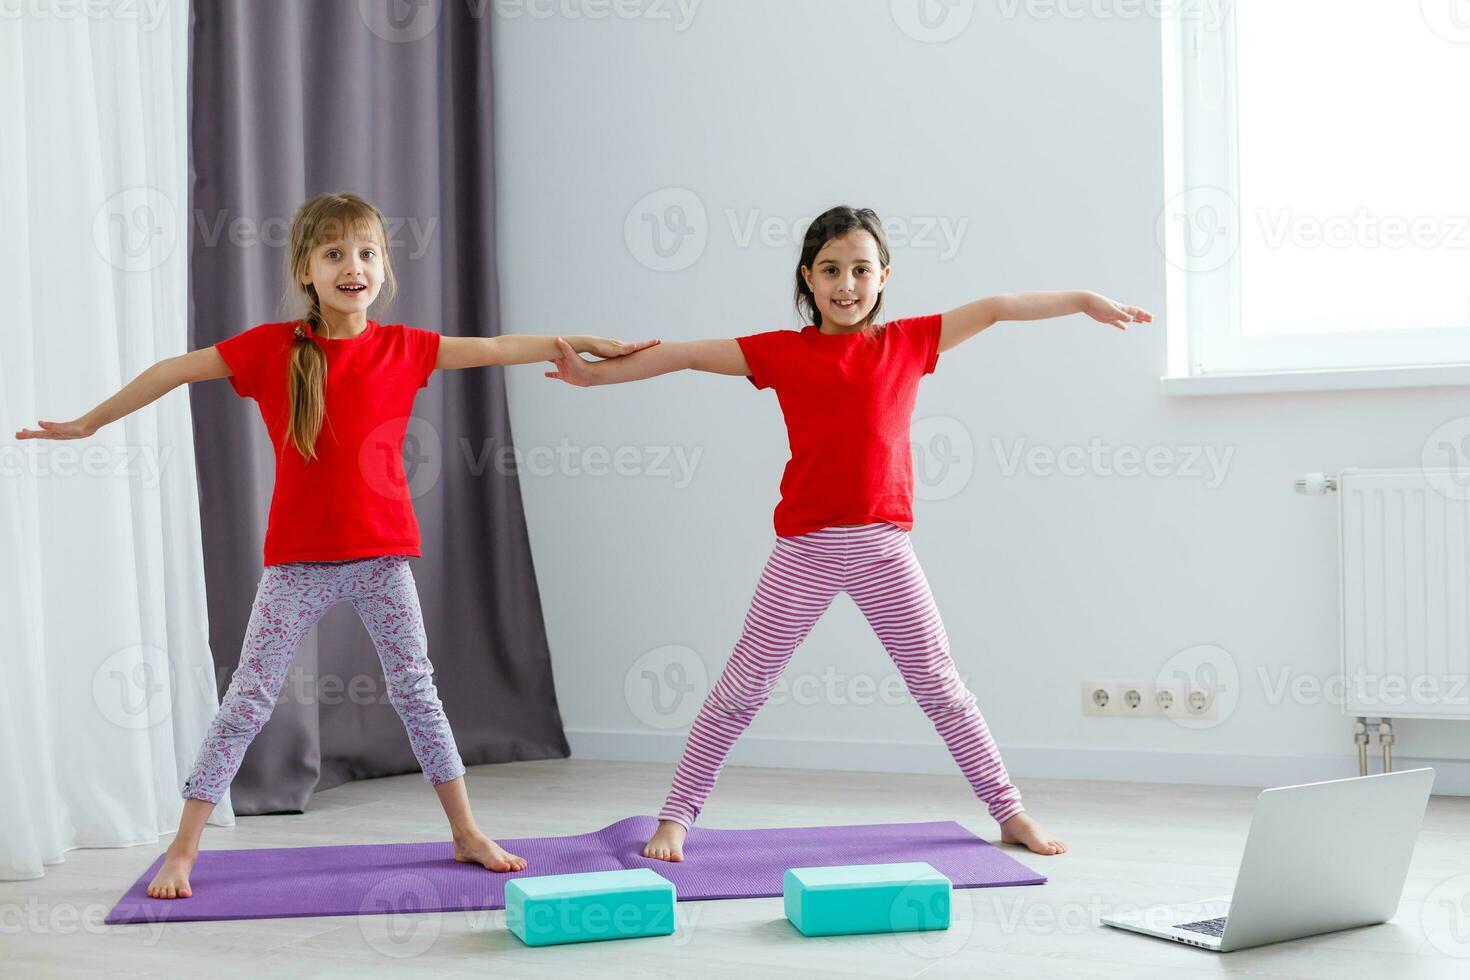 Zwei kleine Mädchen praktizieren Yoga, Stretching, Fitness per Video auf dem Notebook. entferntes Online-Bildungstraining, Aerobic zu Hause. gesunder lebensstil, coronavirus, bleib zu hause. Kindersport Quarantäne zu Hause. foto